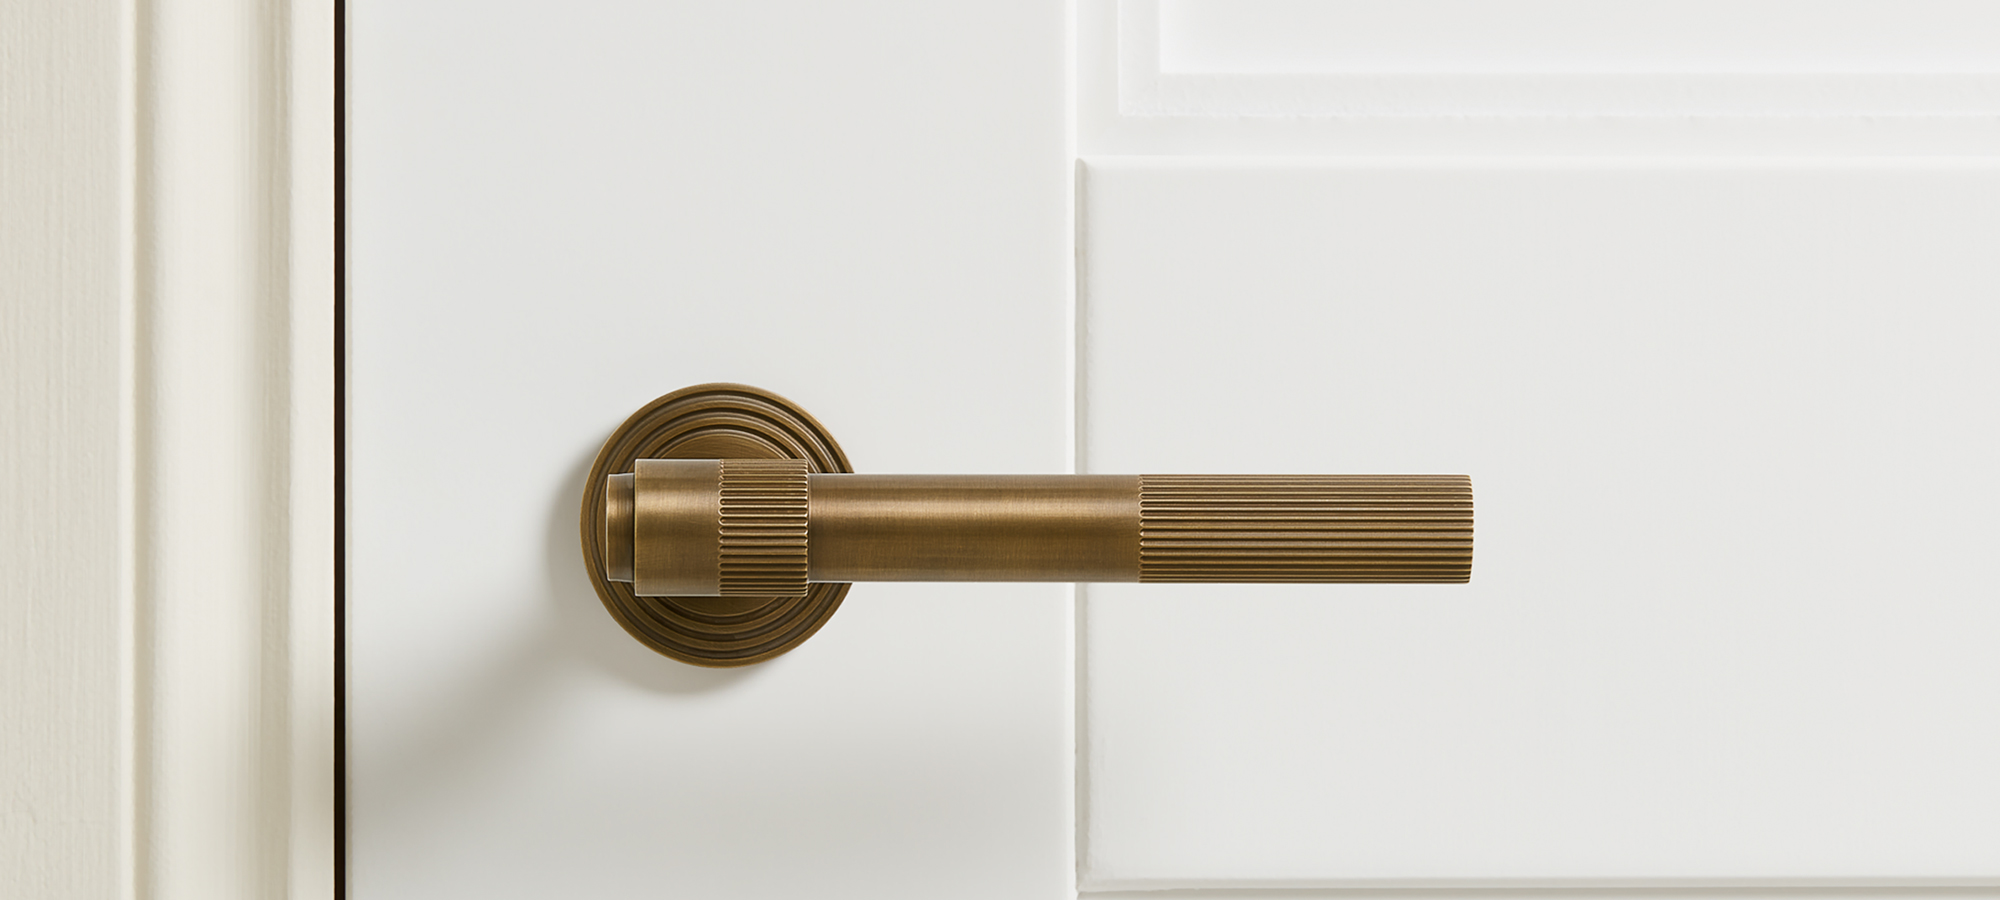 Architectural door handle